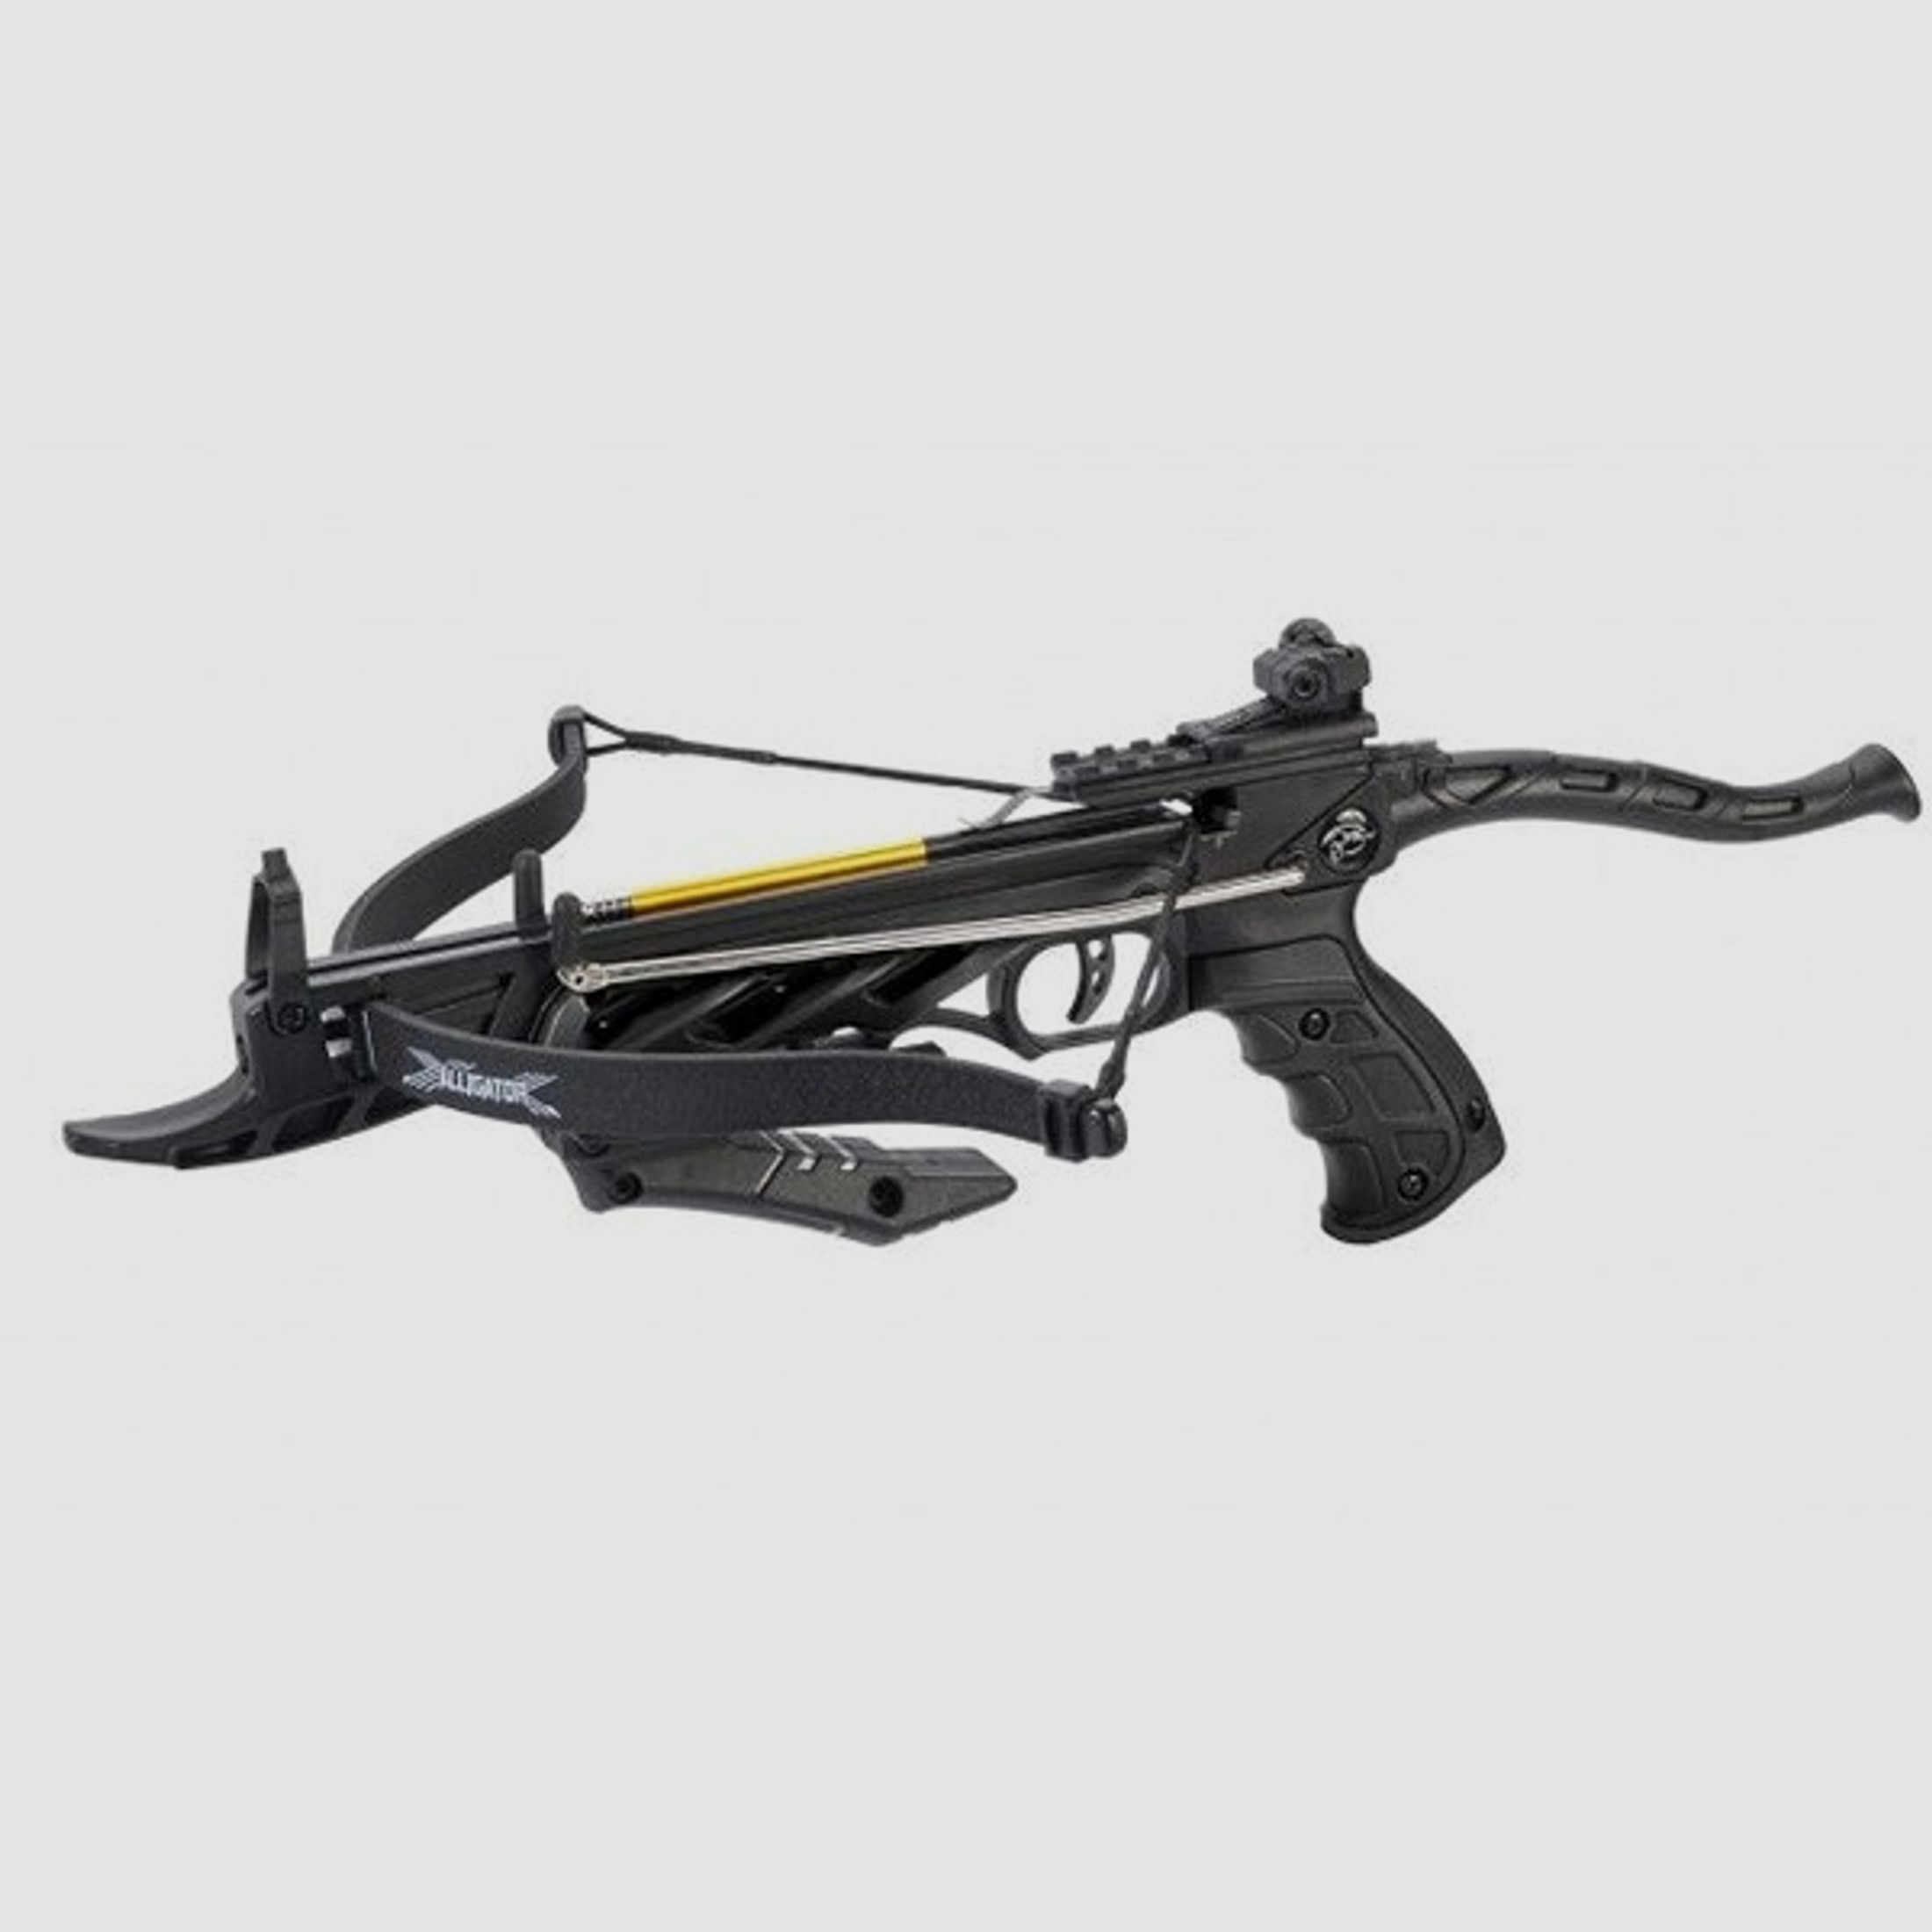 Pistolenarmbrust "ALLIGATOR I" Schwarz 80 lbs / 35kg mit Selbstspannmechanismus